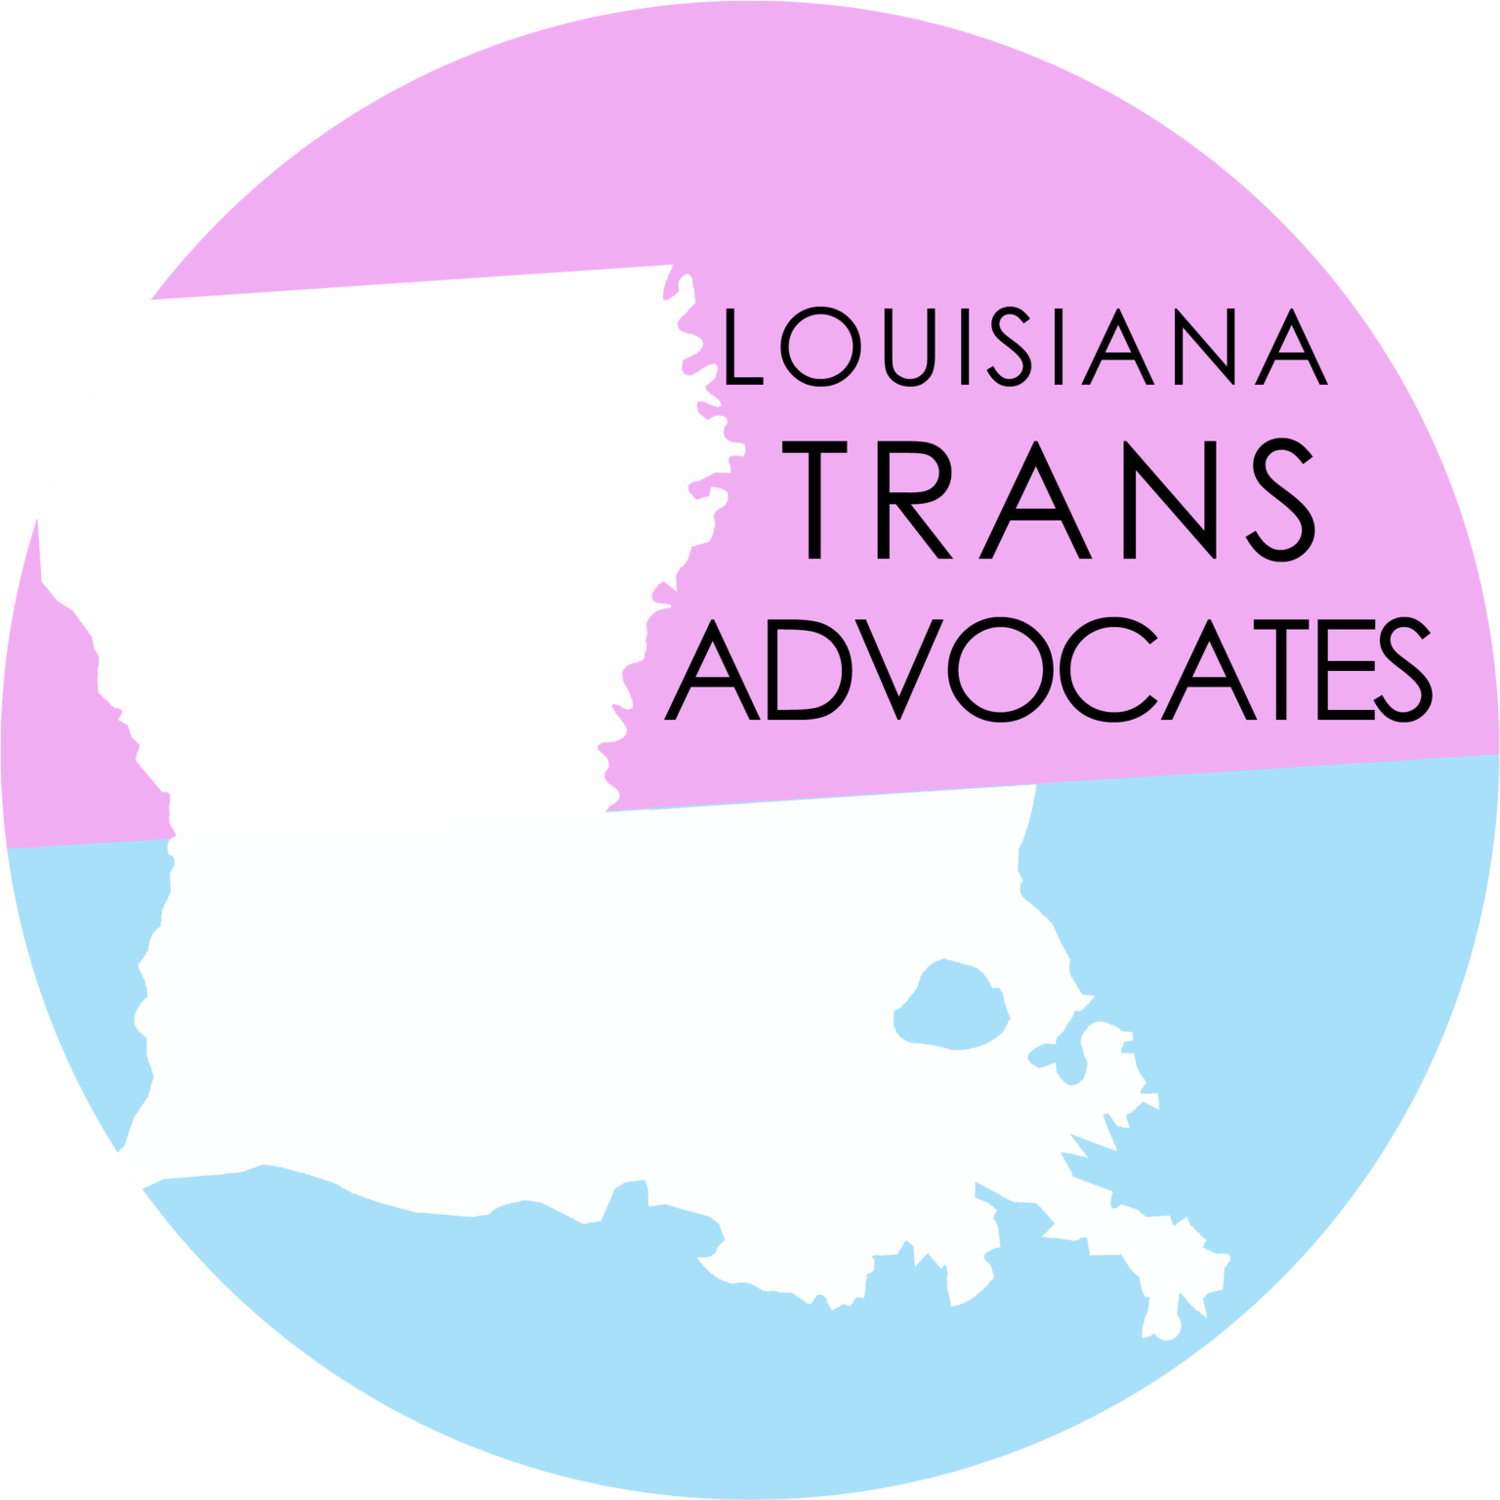 Louisiana Trans Advocates - LGBTQ organization in Baton Rouge LA